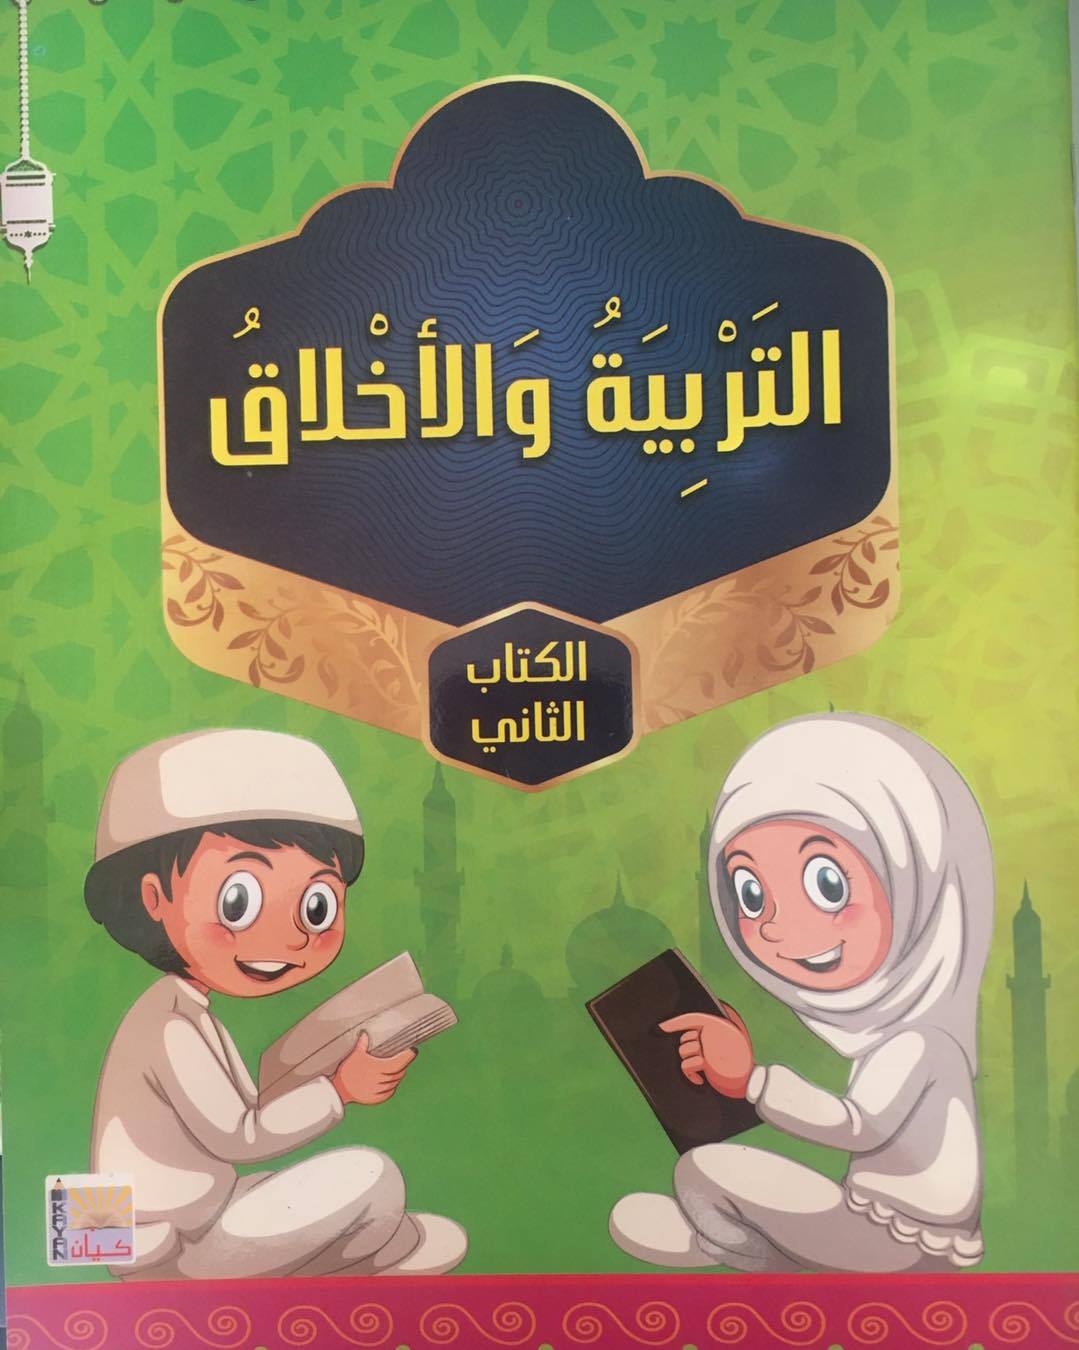 سلسلة منهاج كيان التعليمية كتب أطفال كيان للنشر والتوزيع التربية الإسلامية جزئيين